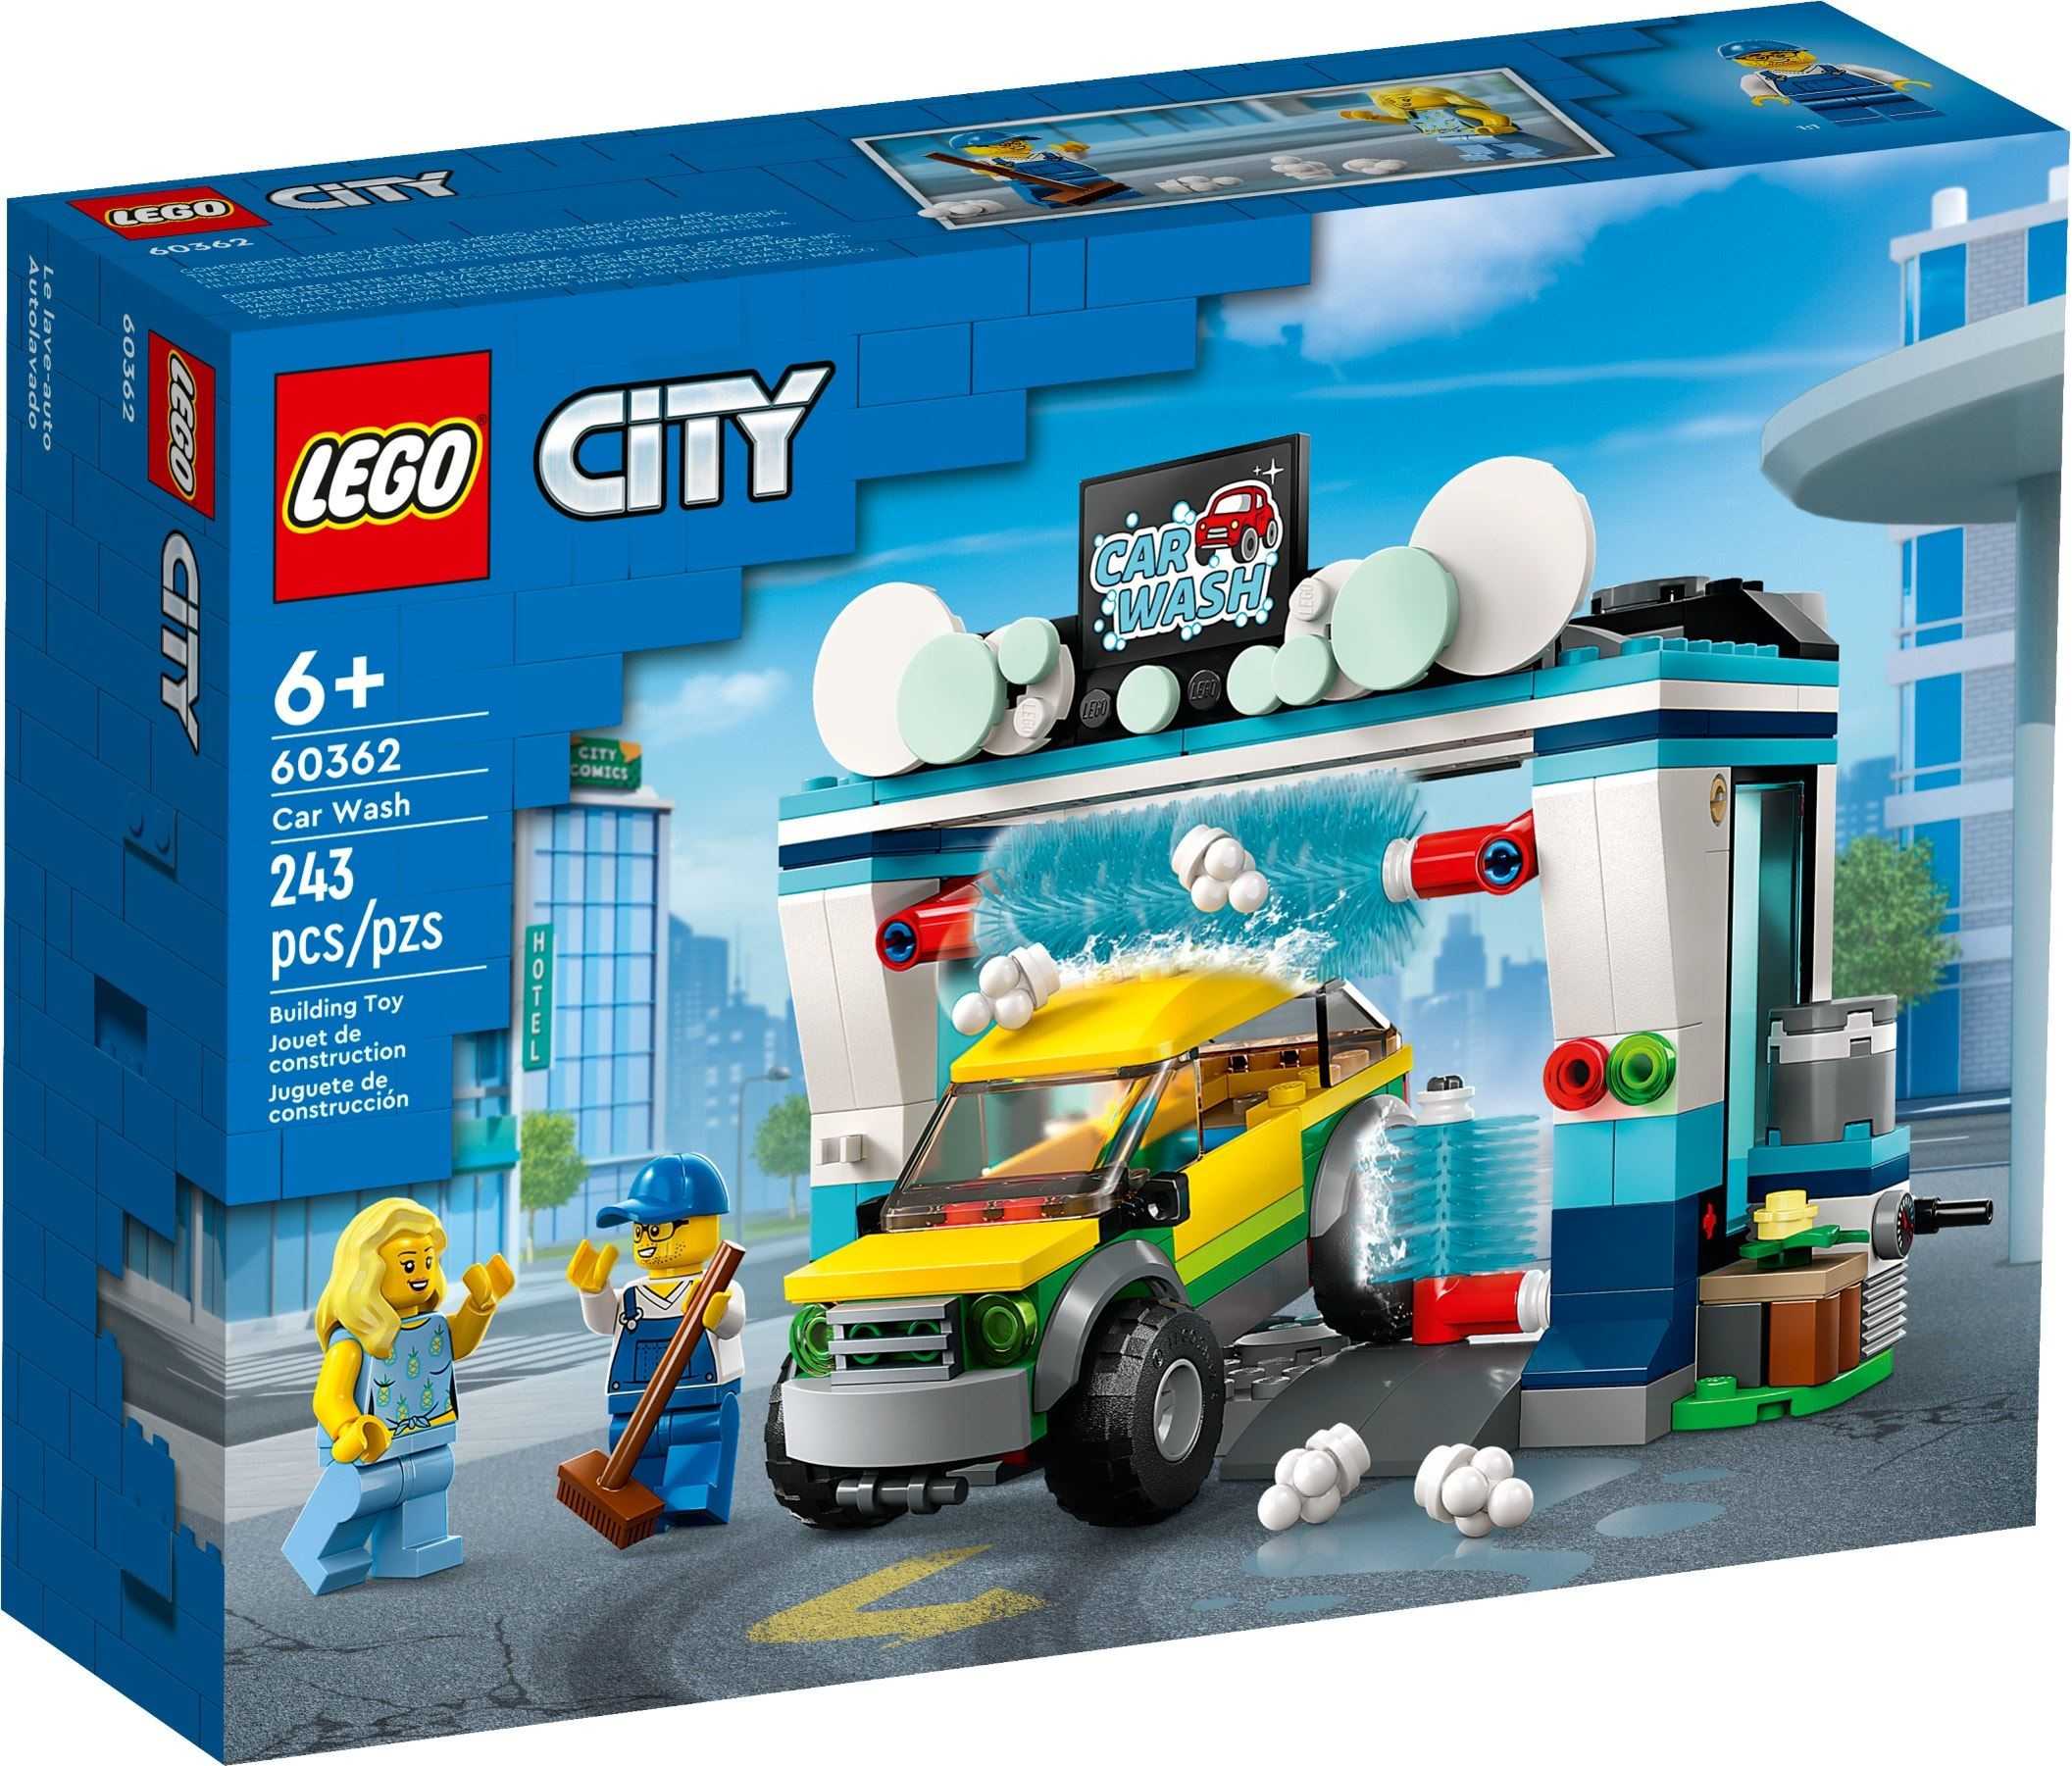 【電積系@北投】LEGO 60362 洗車場(3)-City